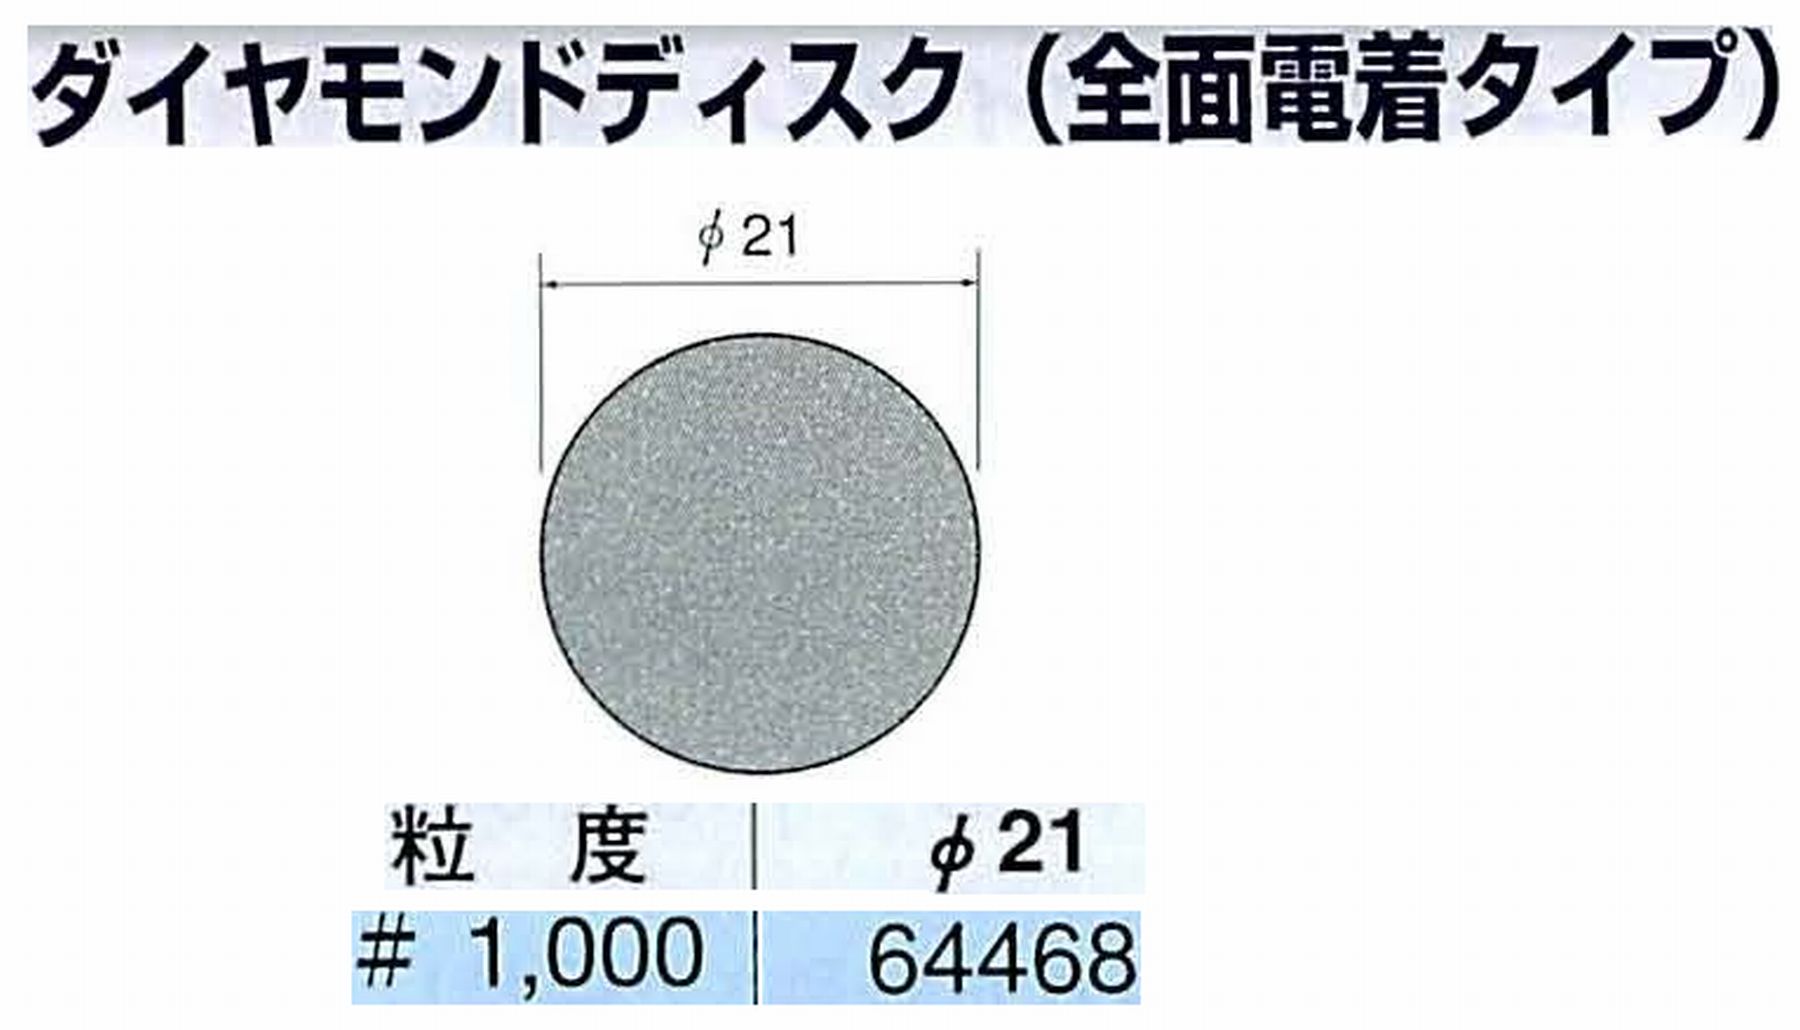 ナカニシ/NAKANISHI アングルグラインダ(電動・エアー) アングルアタッチメント専用工具 ダイヤモンドディスク(全面電着タイプ) 64468